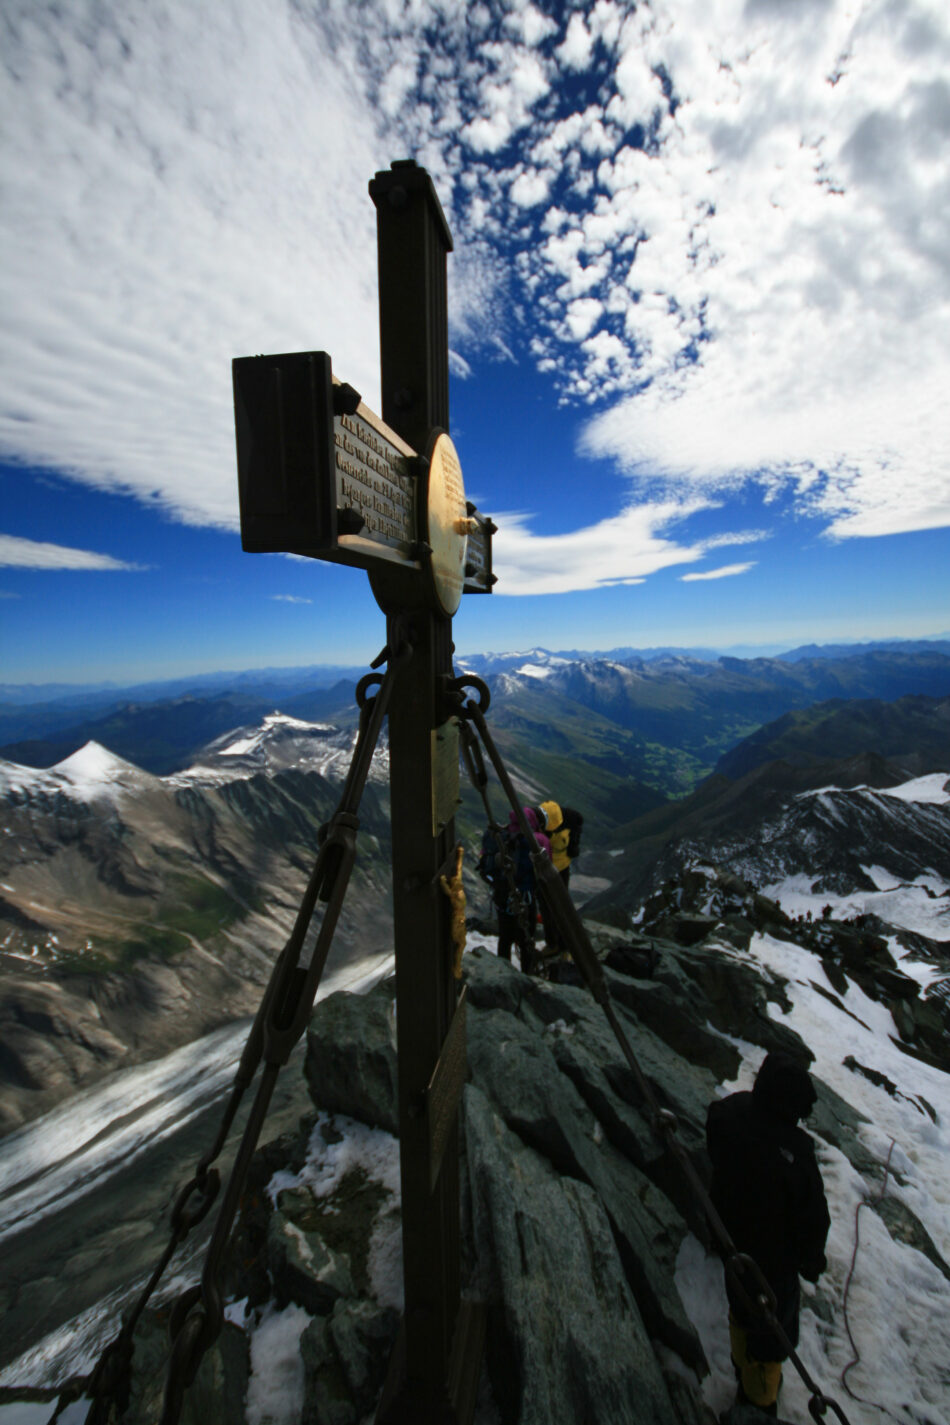 Entdecken Sie das Juwel der Alpen: den Großglockner